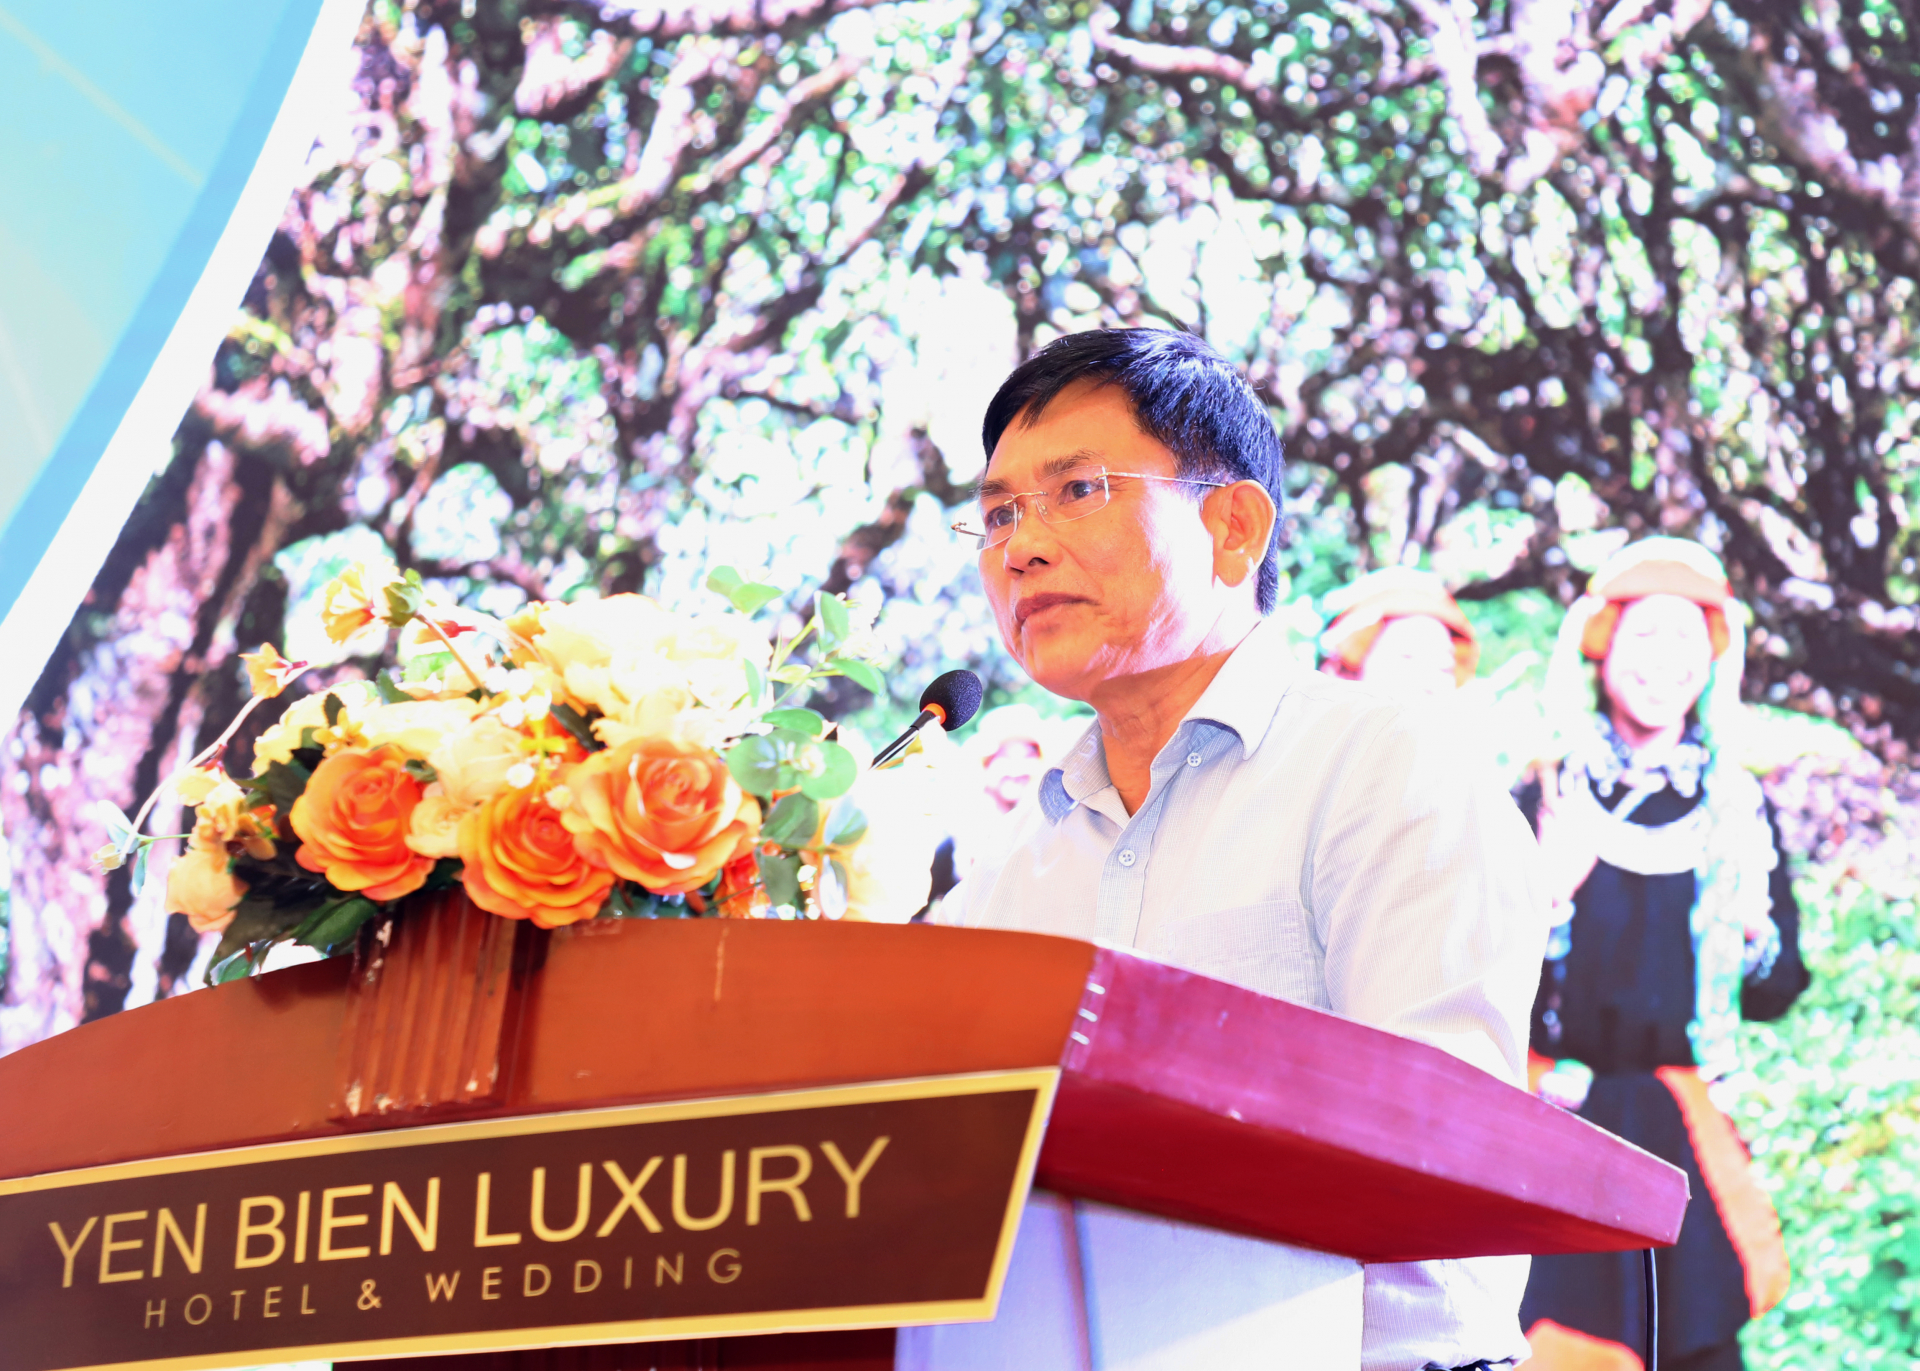 Ông Hoàng Vĩnh Long, Tổng Thư ký Hiệp hội Chè Việt Nam phát biểu các giải pháp nâng cao giá trị từ cây chè.